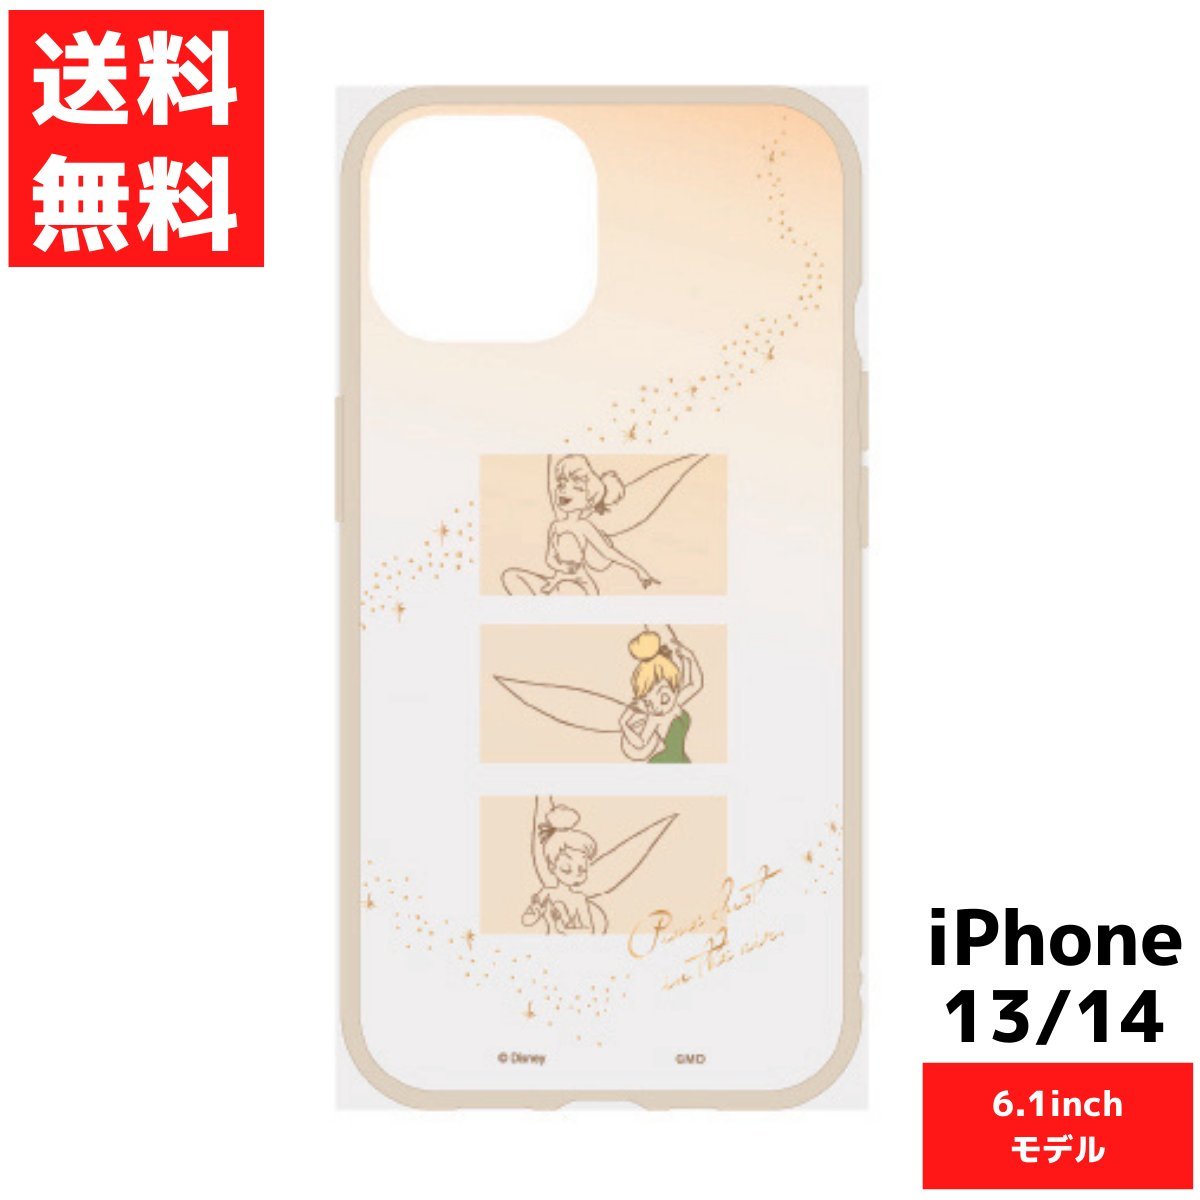 ティンカー・ベル ディズニー IIII fit Clear iPhone14 13対応ケース 6.1inch アイフォン スマホ カバー_画像1